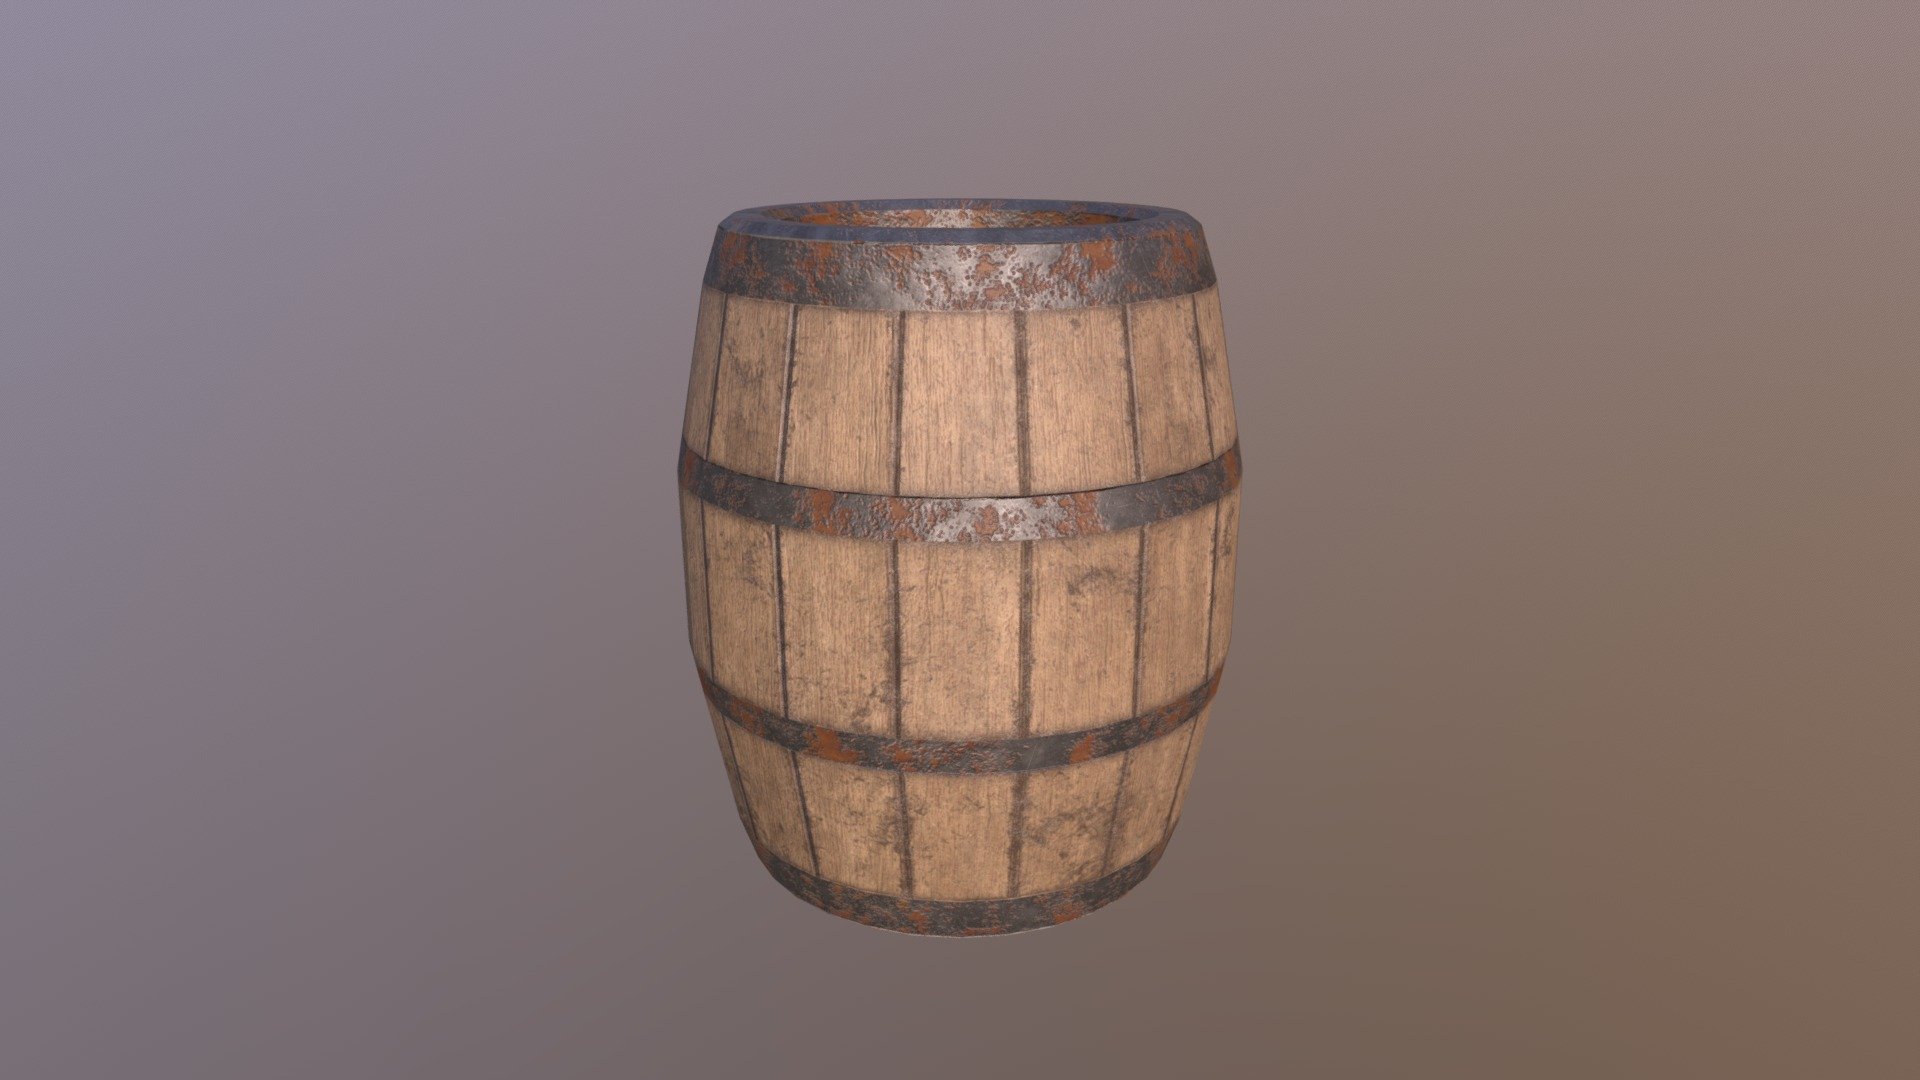 Western barrel